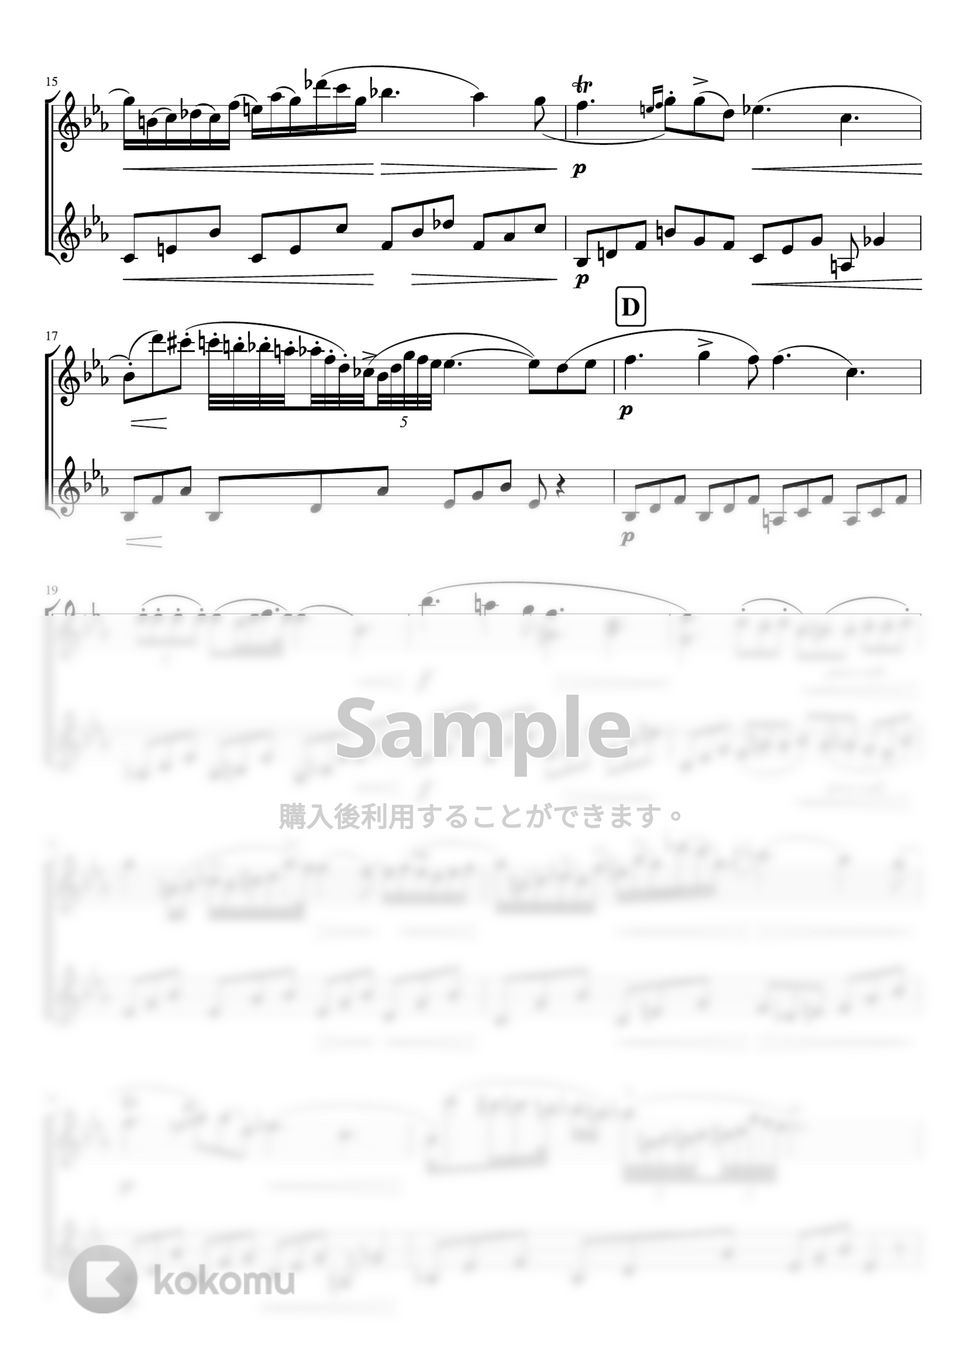 ショパン - ノクターン第2番 (無伴奏/バイオリン二重奏) by pfkaori